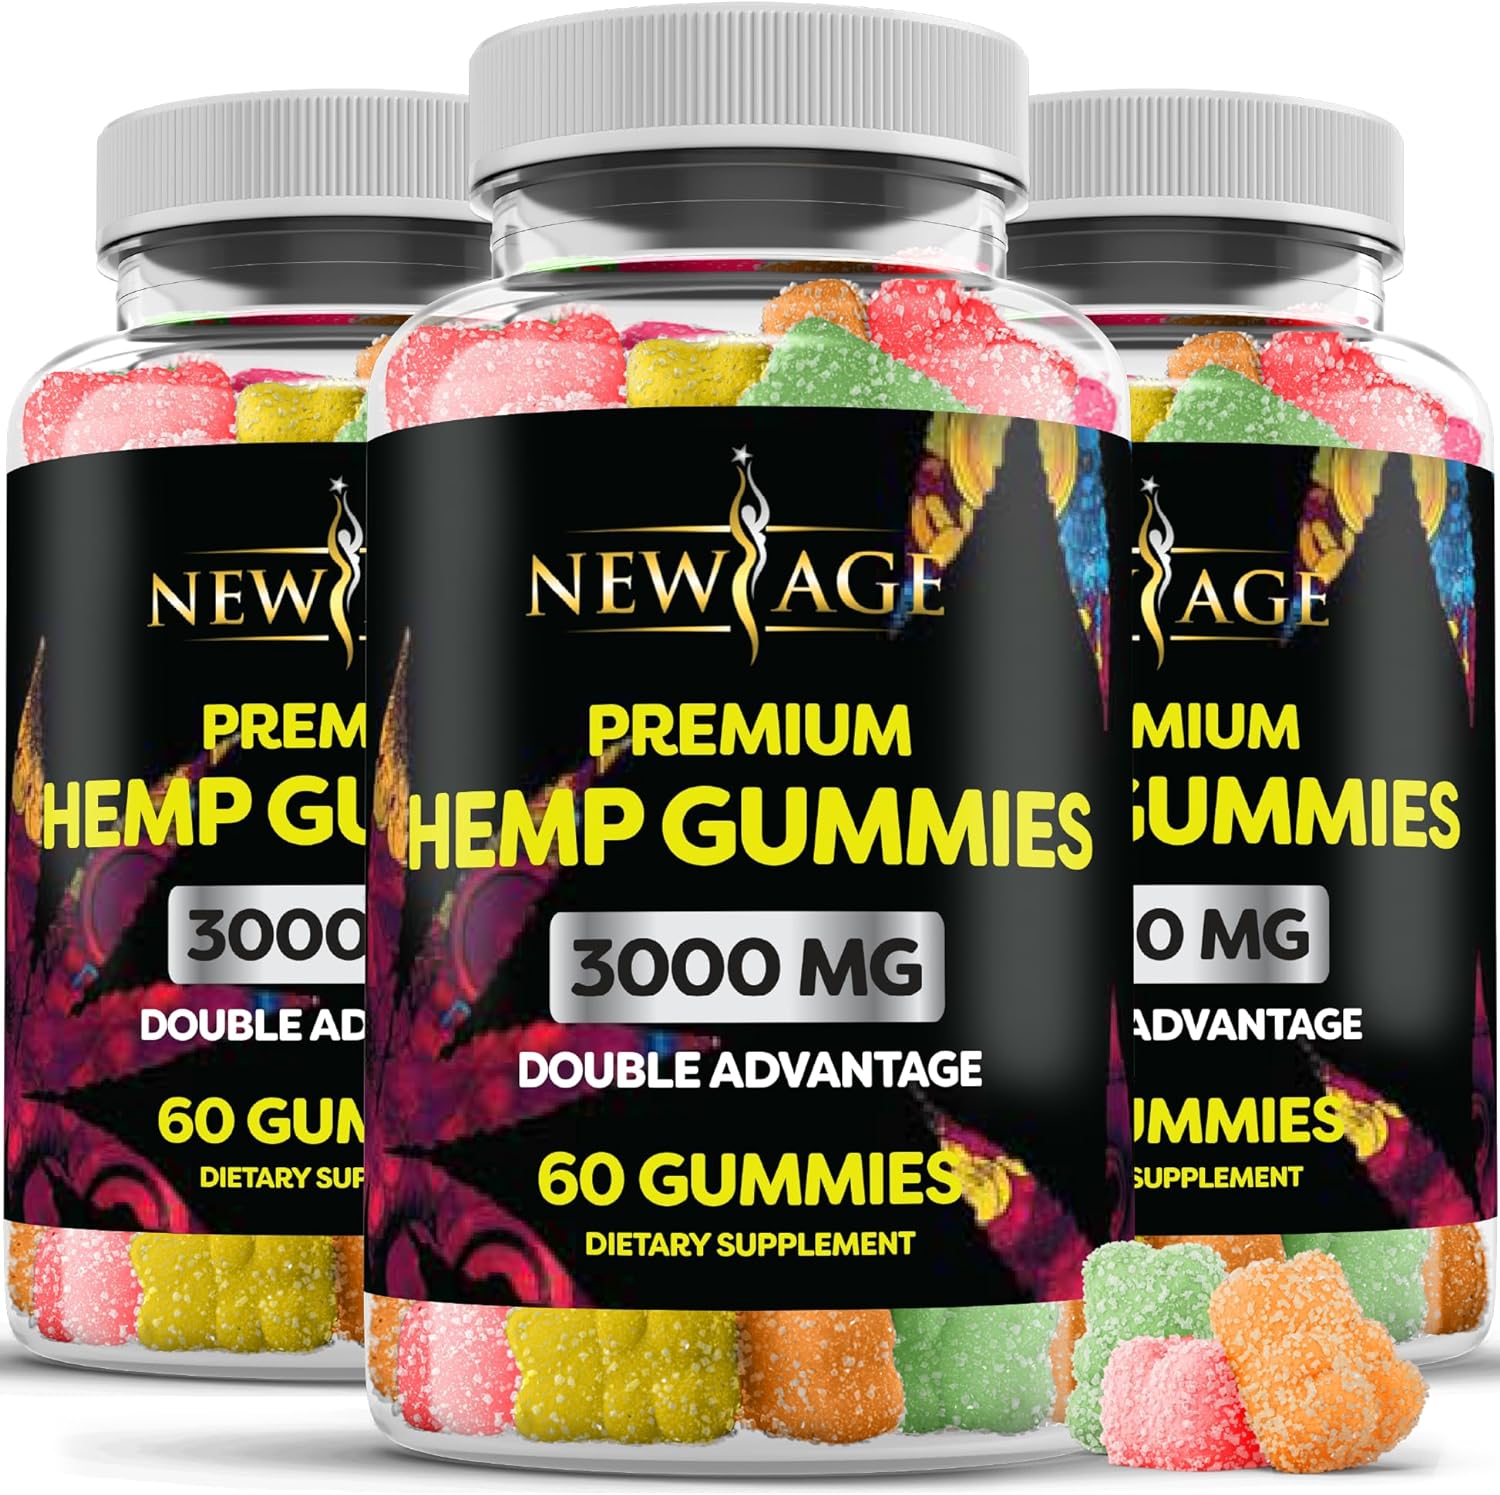 New Age Naturals Advanced Hemp Big Gummies 3000Mg -120Ct- 100% Natural Hemp Oil Infused Gummies